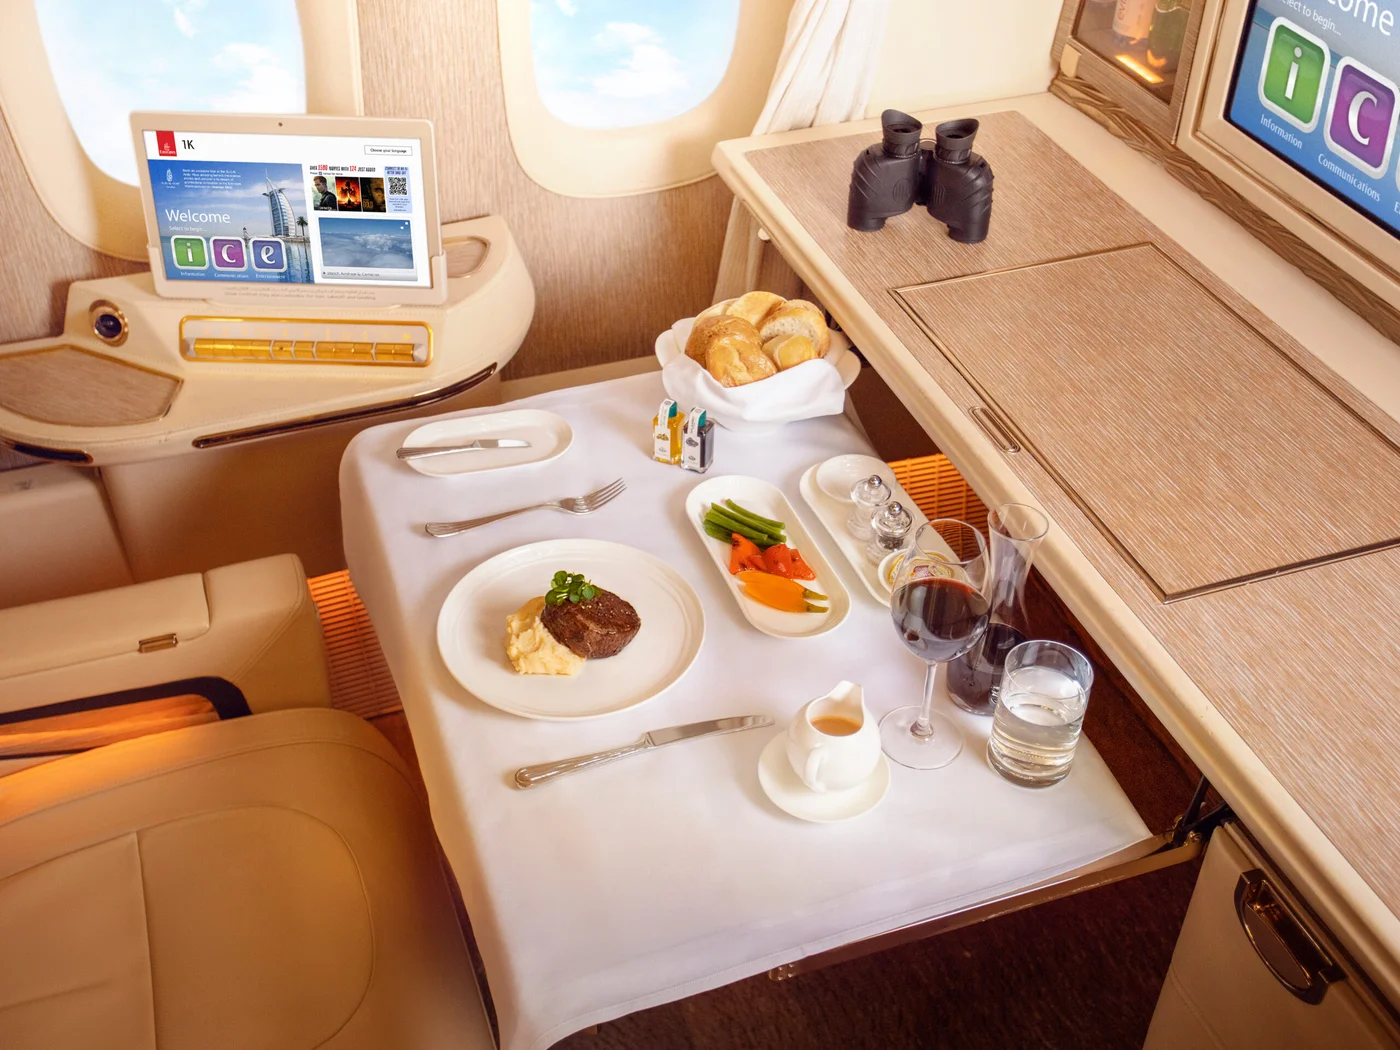 Hauptspeise in der Emirates First Class